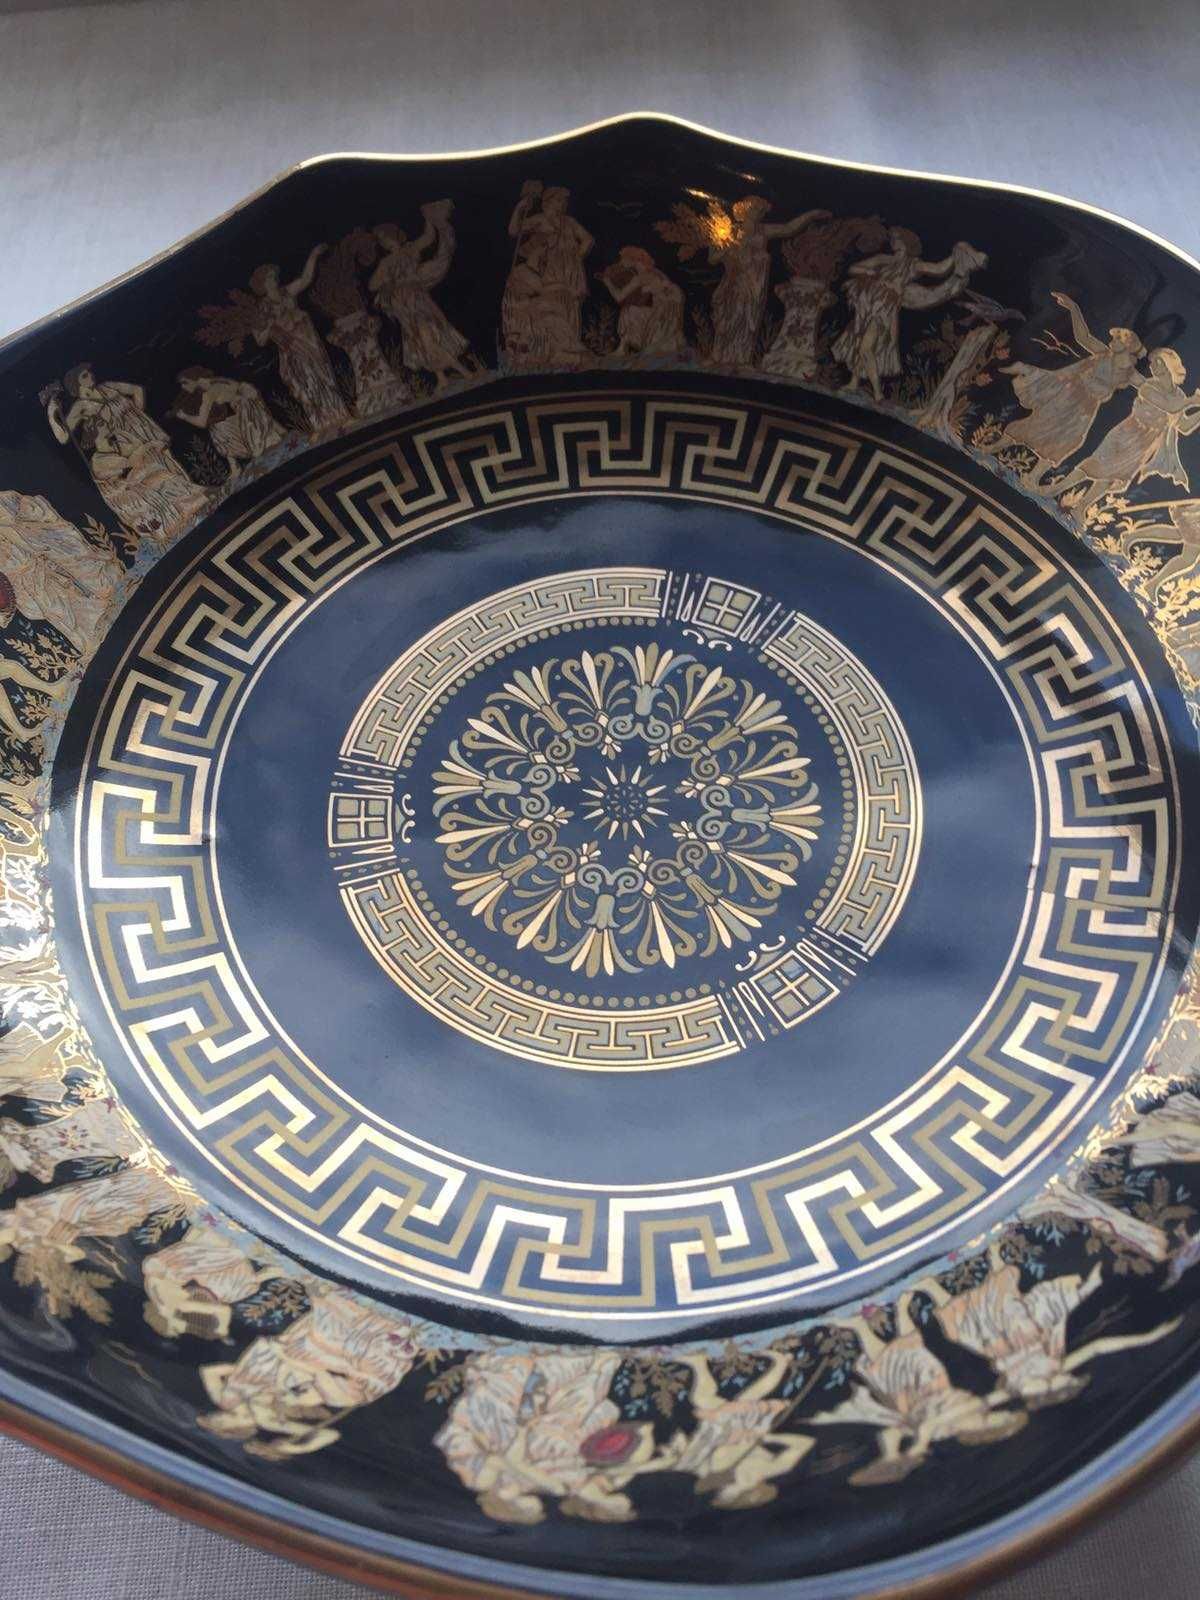 Ексклюзивний посуд з позолотою  Оригінал . Греція.